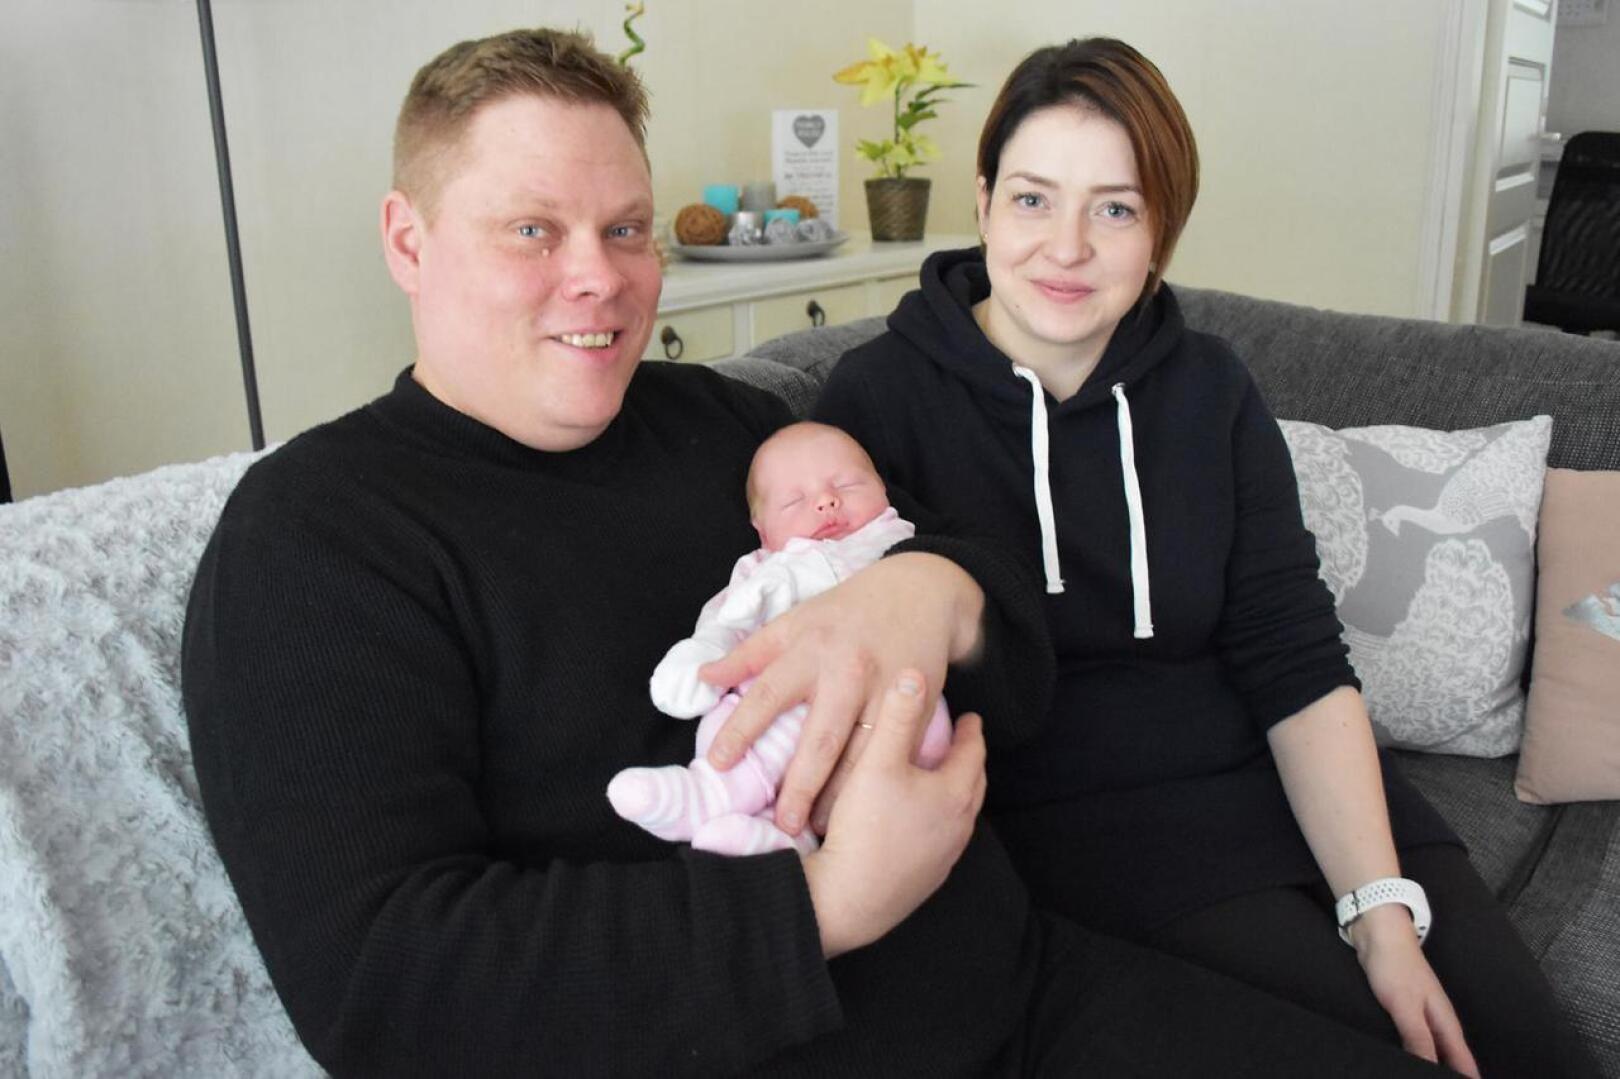 2020-luvun ensimmäinen haapavetinen vauva syntyi Katja Salon ja Pekka Veivon esikoiseksi Rytkynkylälle 3. tammikuuta. Pienokaisella oli painoa 3040 grammaa ja pituutta 49 senttiä.